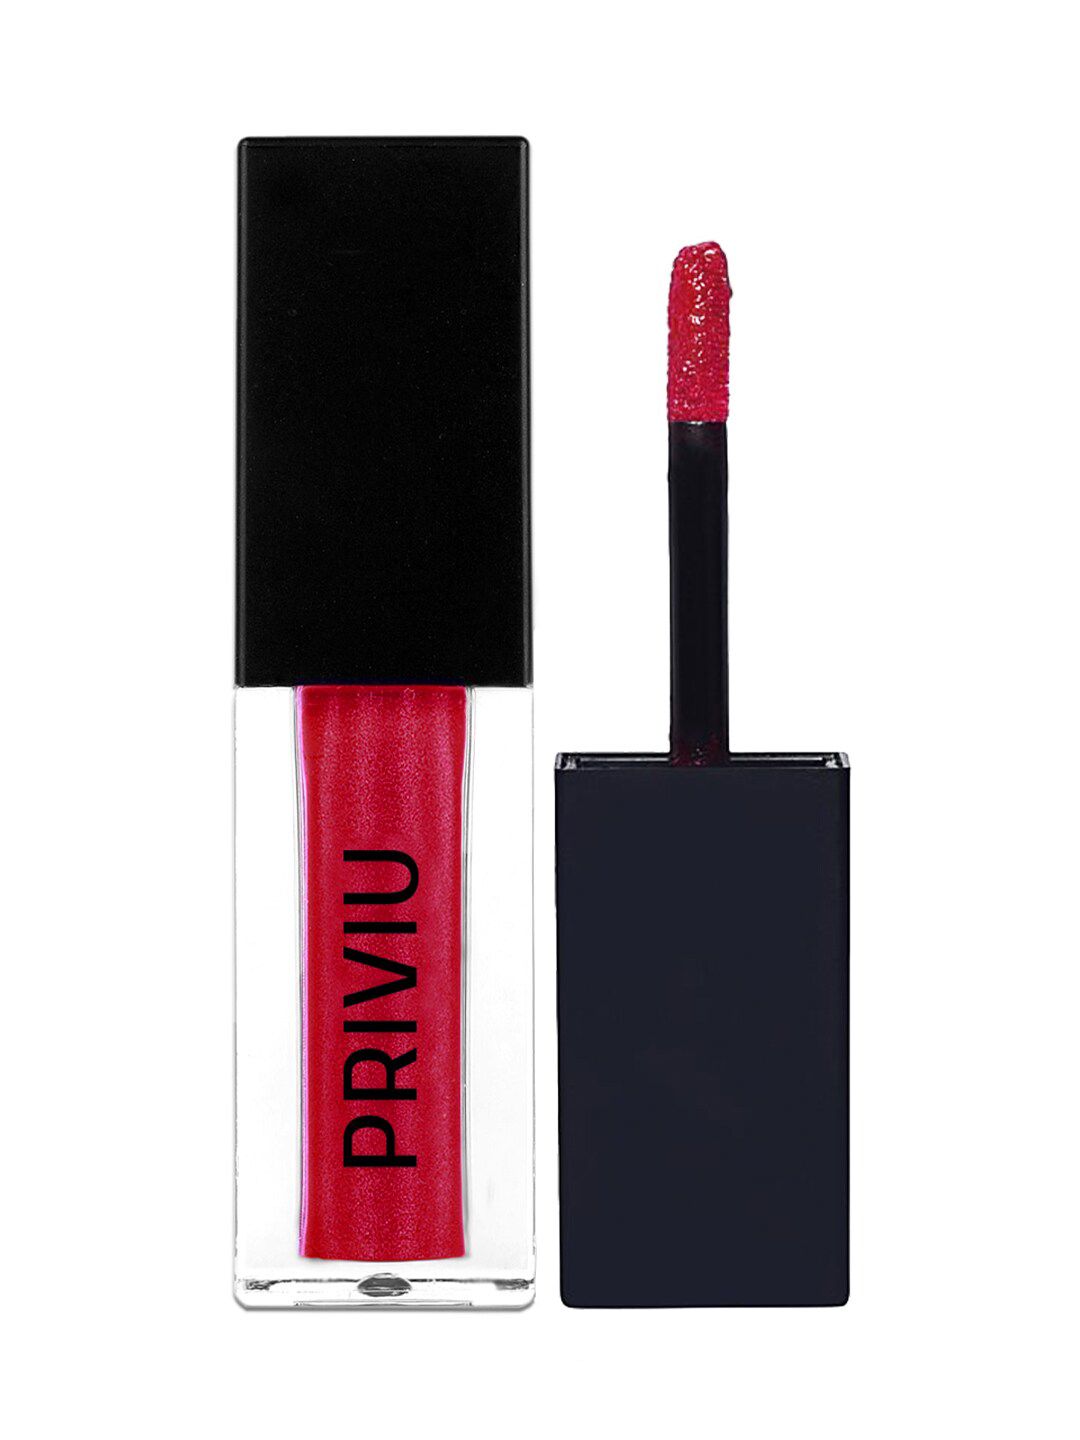 PRIVIU All Day Matte Liquid Lipstick 151 Sparkling Red Price in India